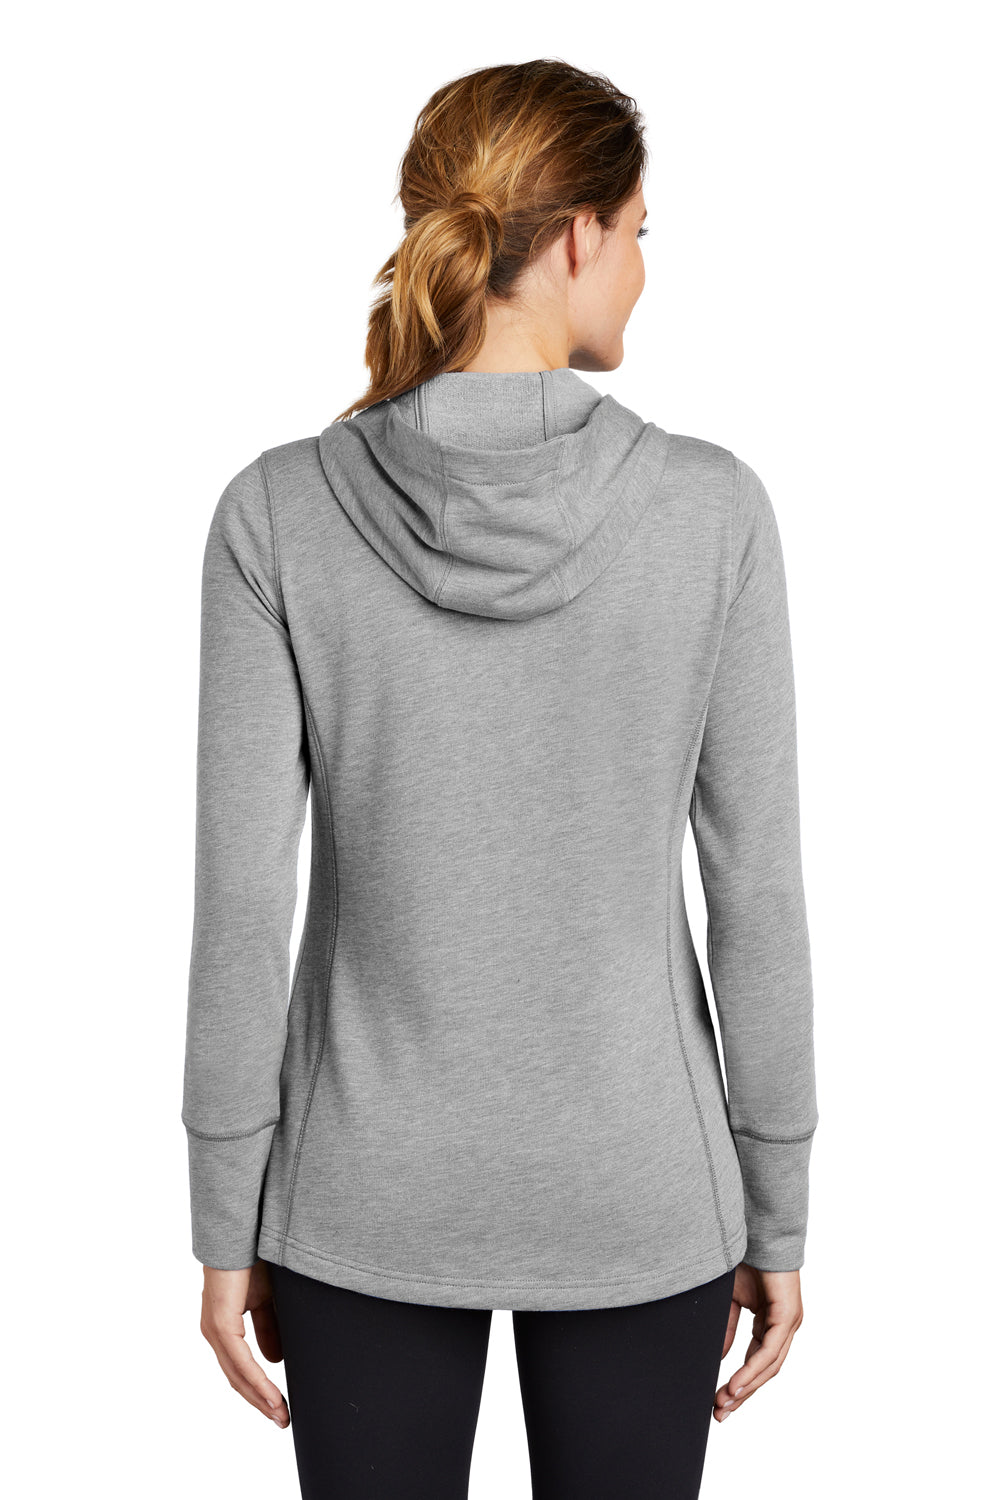 Sport-Tek LST296 Womens Moisture Wicking Fleece Hooded Sweatshirt Hoodie Light Grey Back